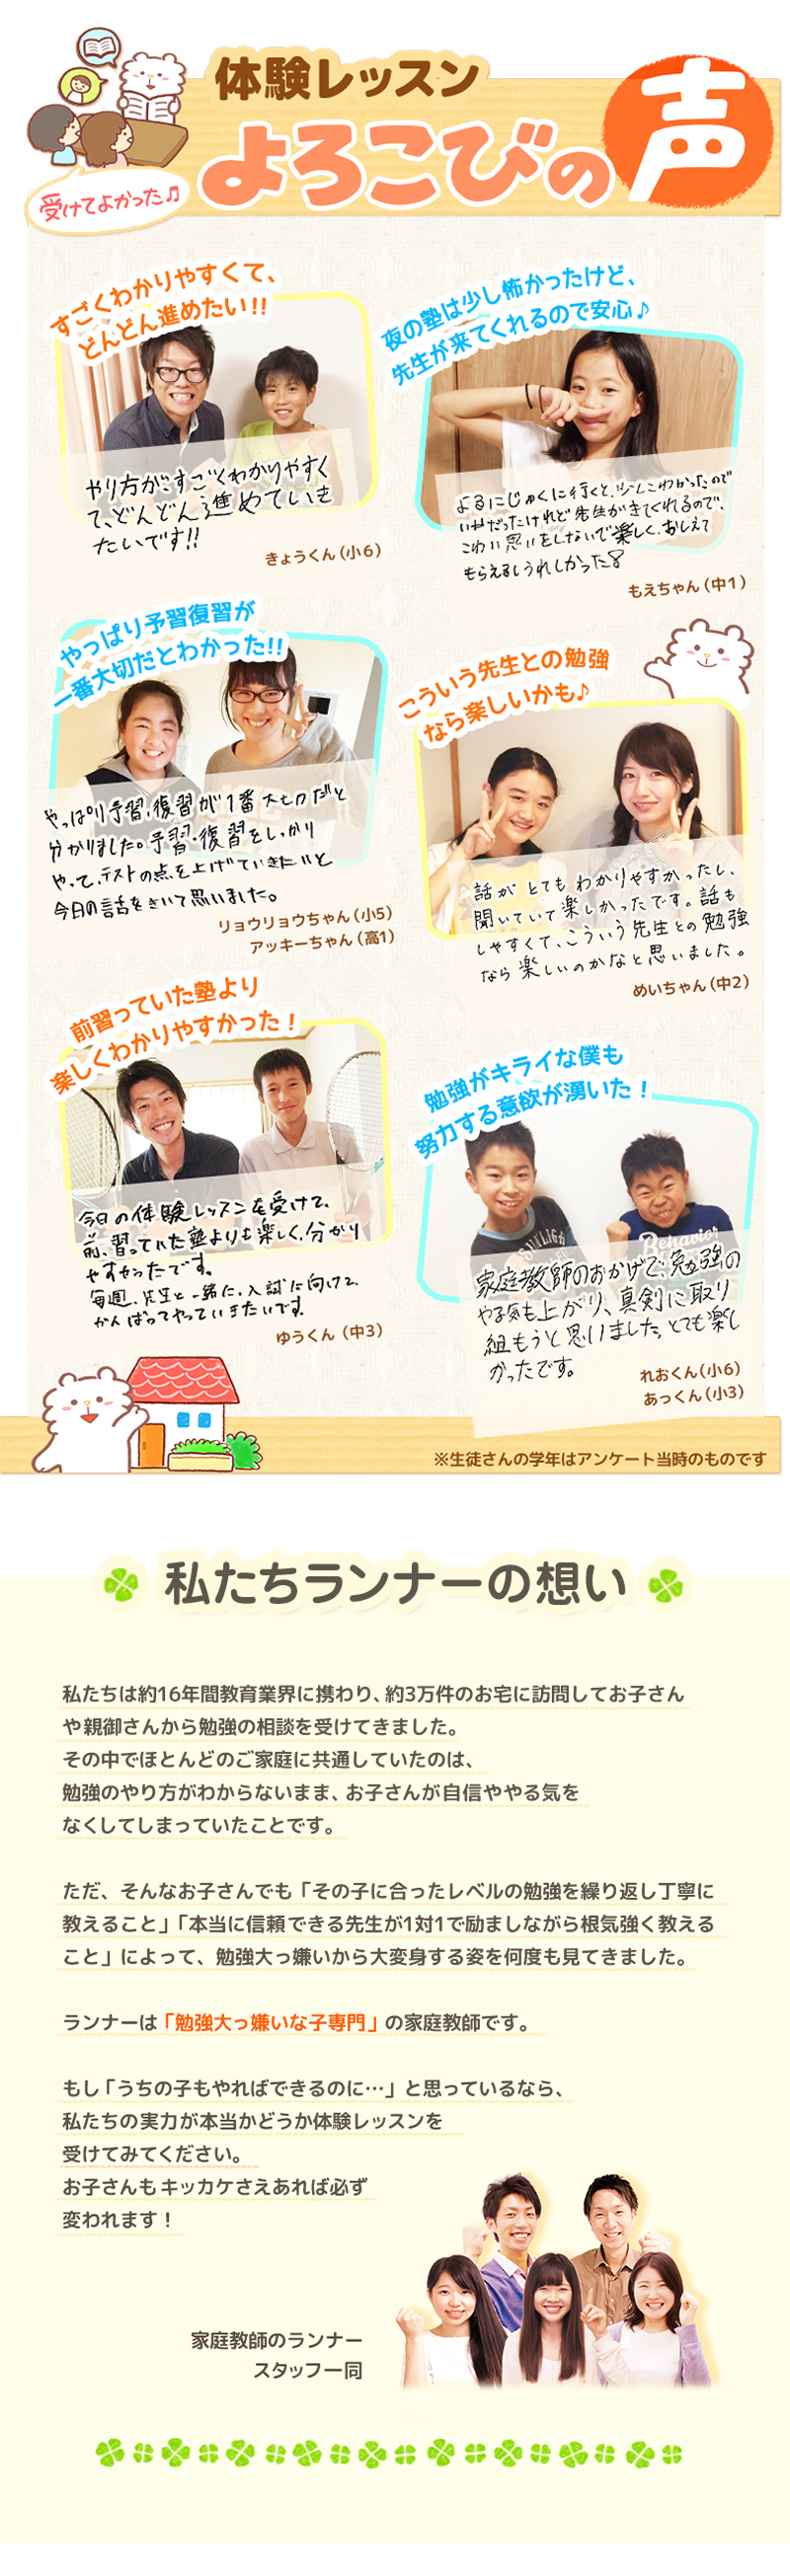 【家庭教師-栃木県-芳賀郡のお客様のページ】【画像が表示されない場合はページ下部に画像と同じ内容をテキストで掲載していますのでそちらをご覧ください。】